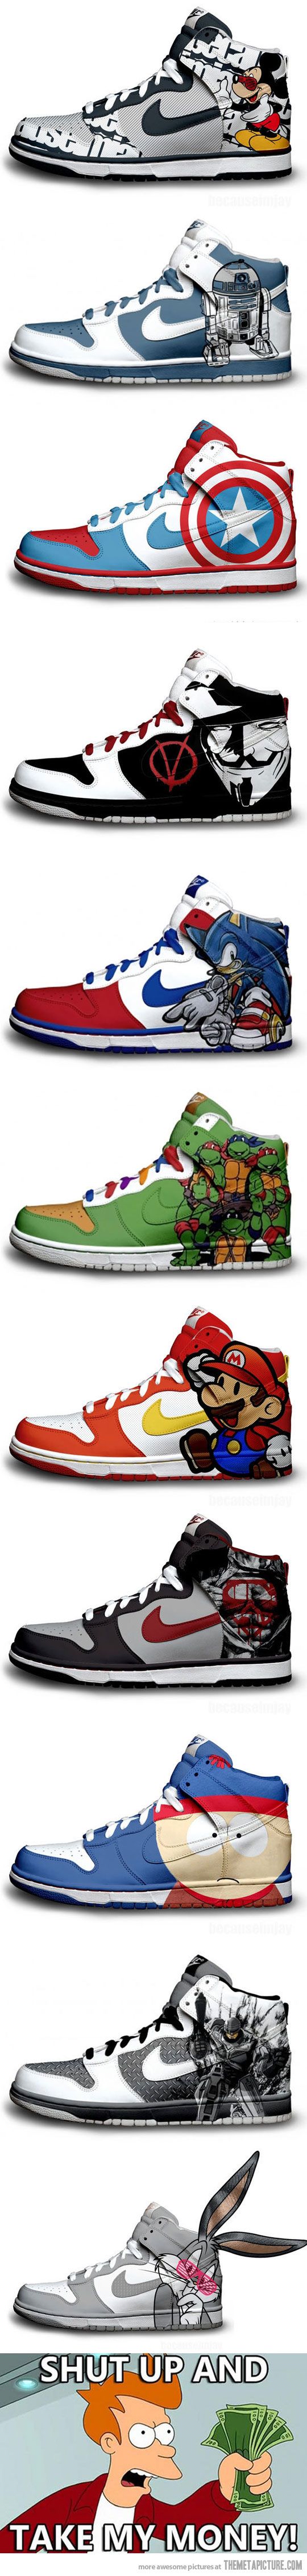 Geeky #Nike Sneakers